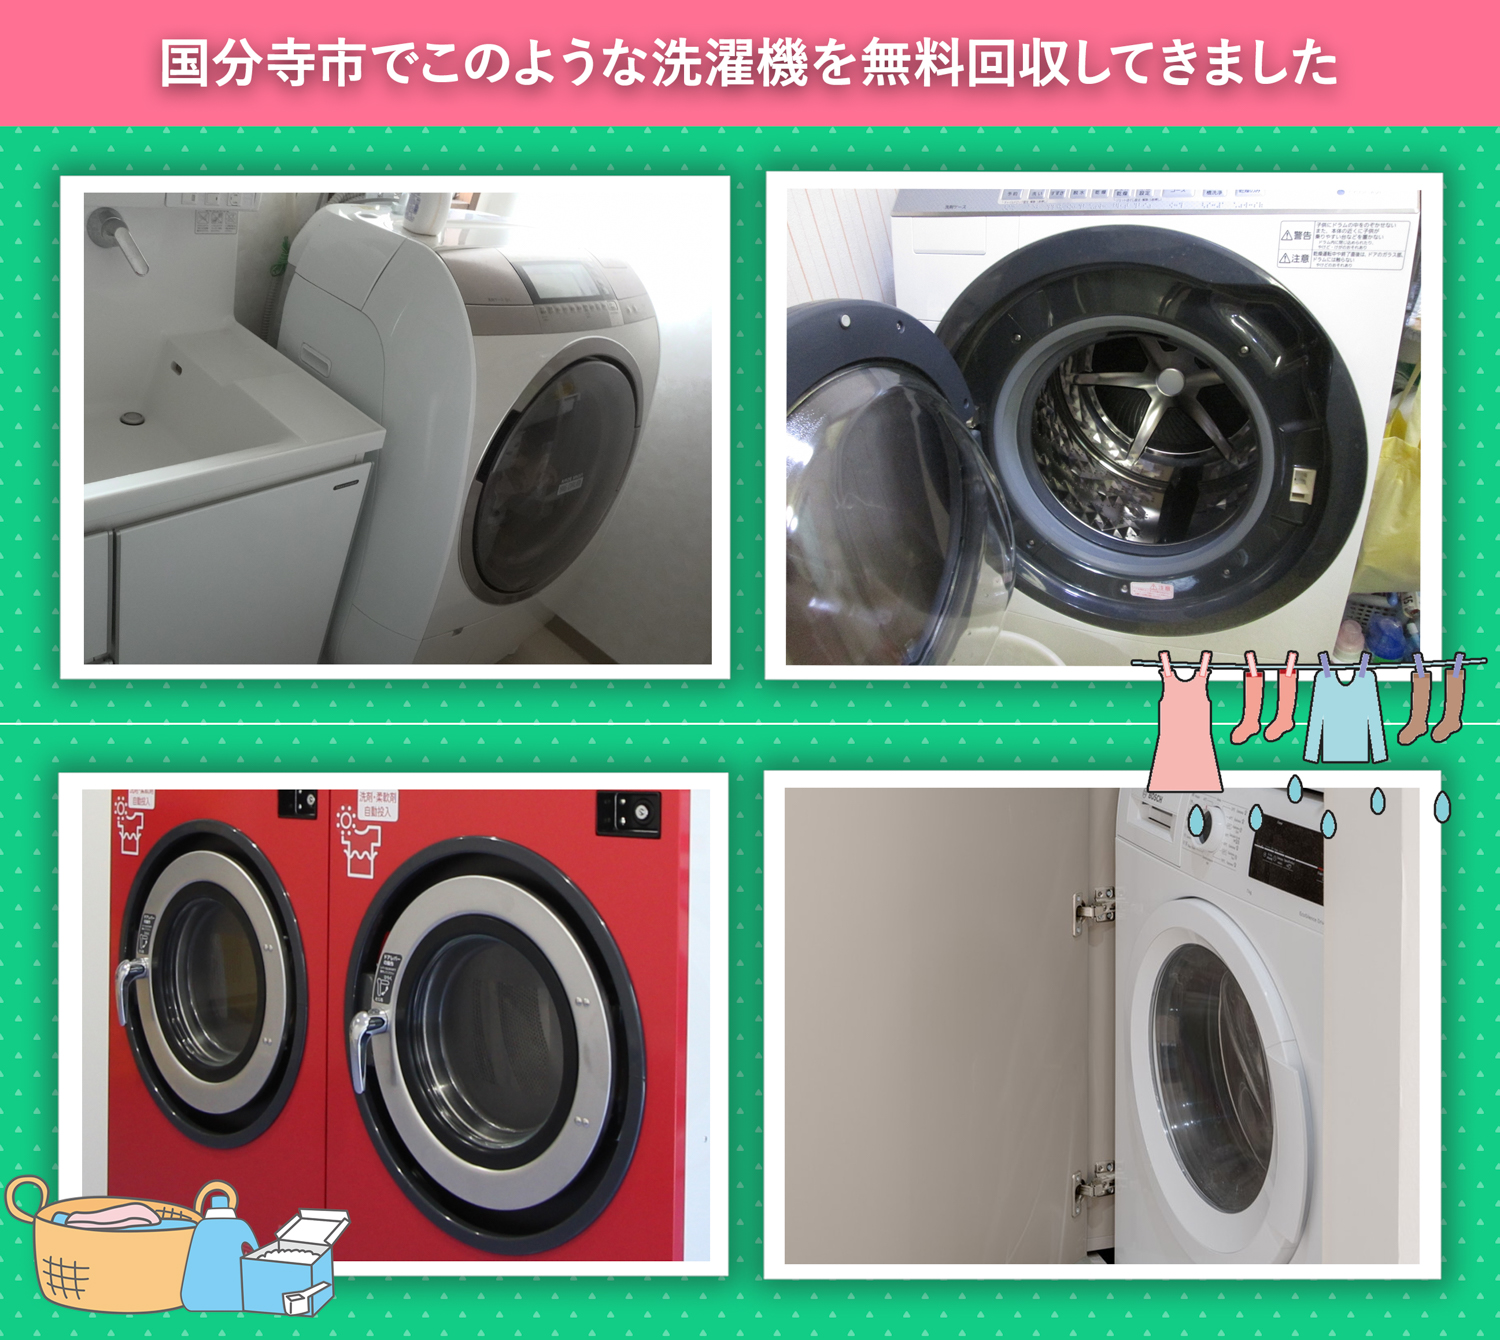 国分寺市でこのような洗濯機を無料回収してきました。